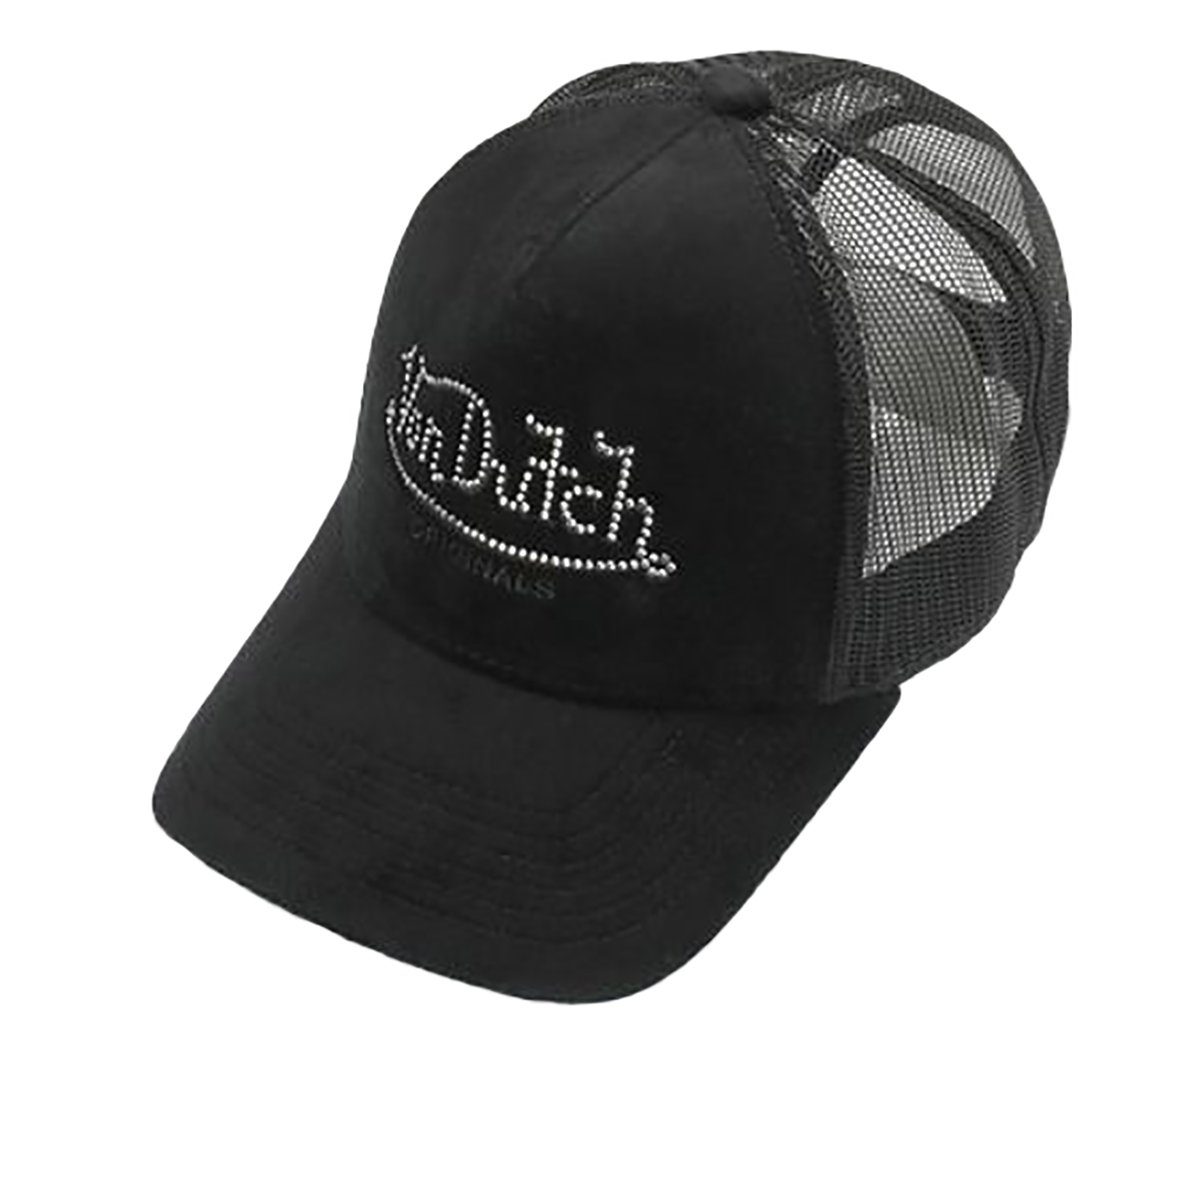 Trucker Von Dutch Cap Miami